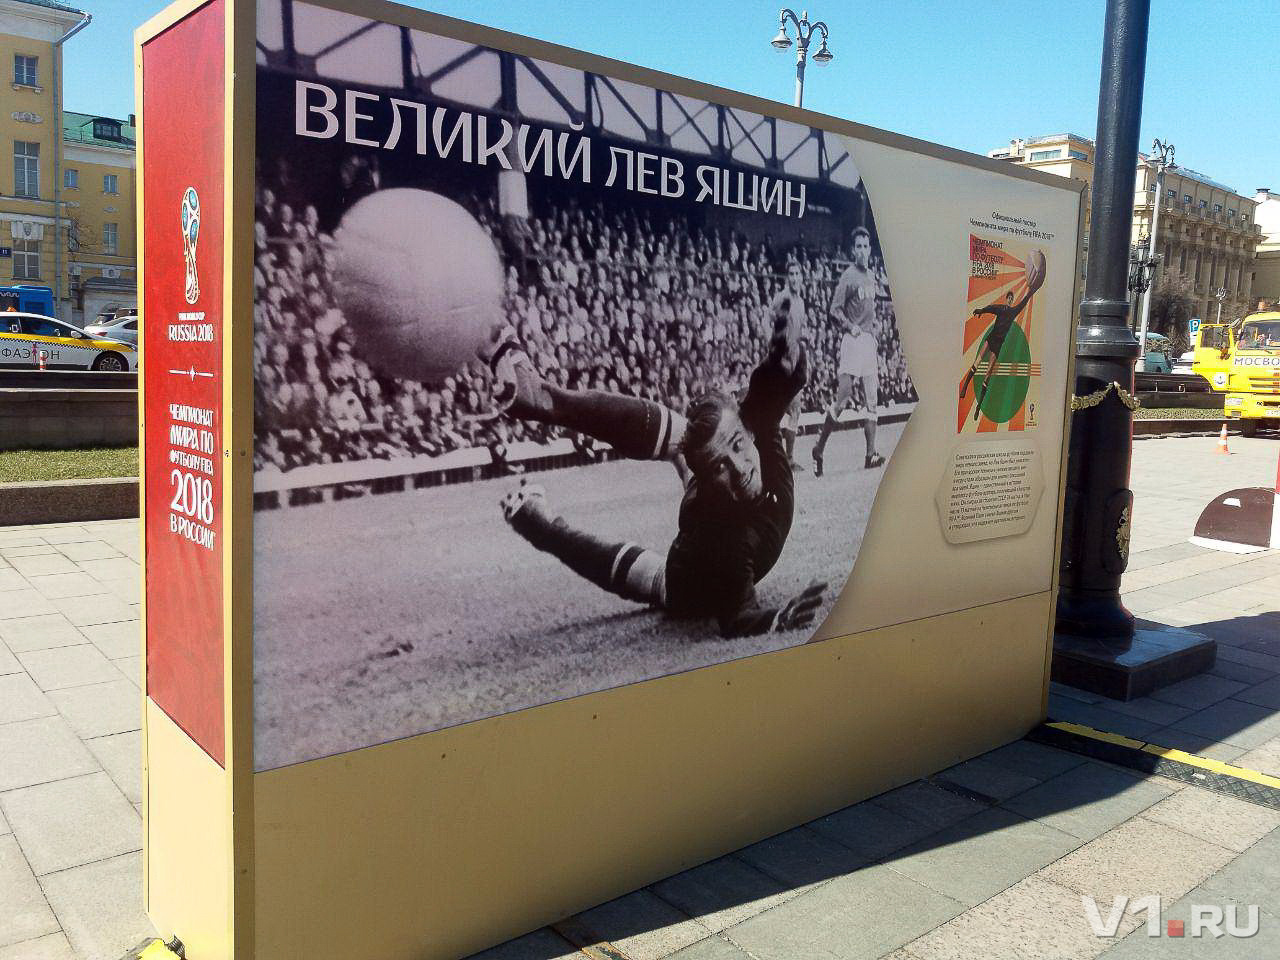 Официальный плакат чемпионата мира по футболу 2018 года с изображением легендарного вратаря Льва Яшина